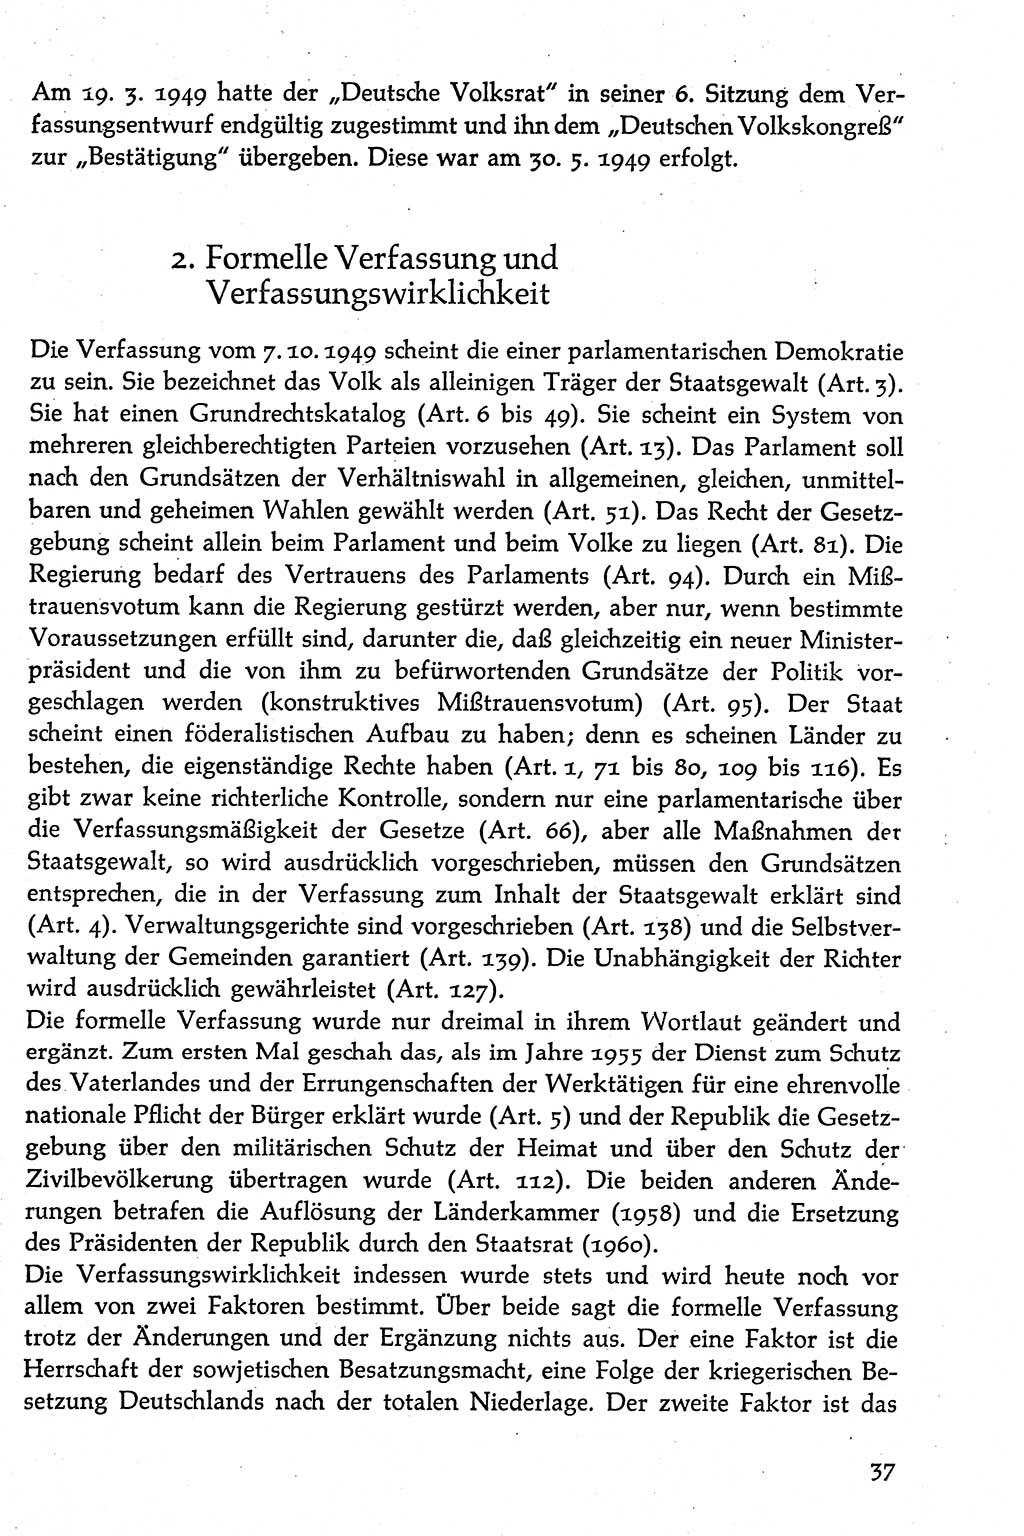 Volksdemokratische Ordnung in Mitteldeutschland [Deutsche Demokratische Republik (DDR)], Texte zur verfassungsrechtlichen Situation 1963, Seite 37 (Volksdem. Ordn. Md. DDR 1963, S. 37)